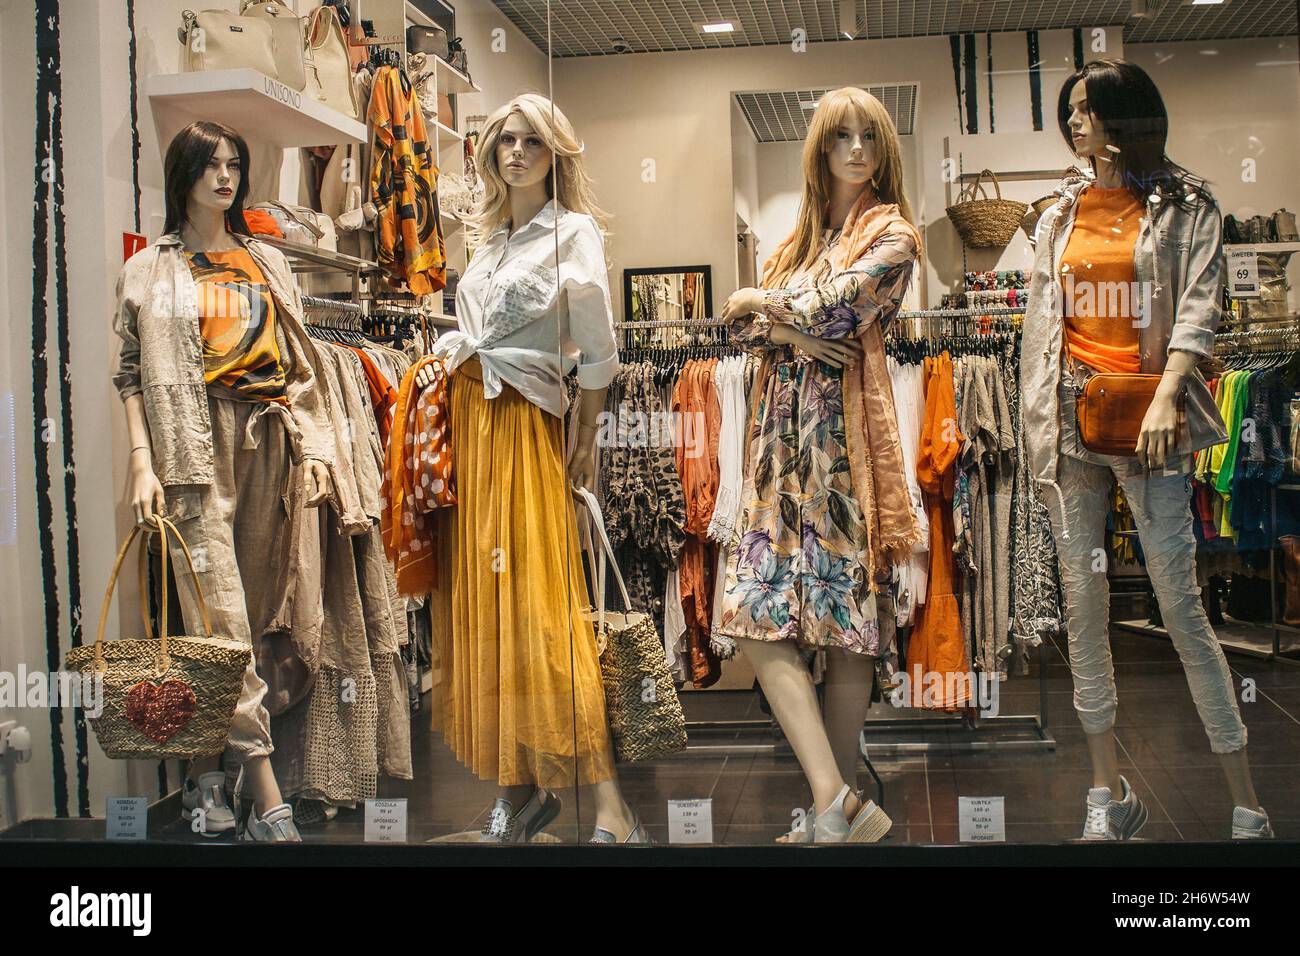 Polonia, Bydgoszcz - 15 maggio 2019: I manichini femminili dimostrano una elegante collezione di abiti primavera estiva. Belle bambole nel vento del negozio Foto Stock